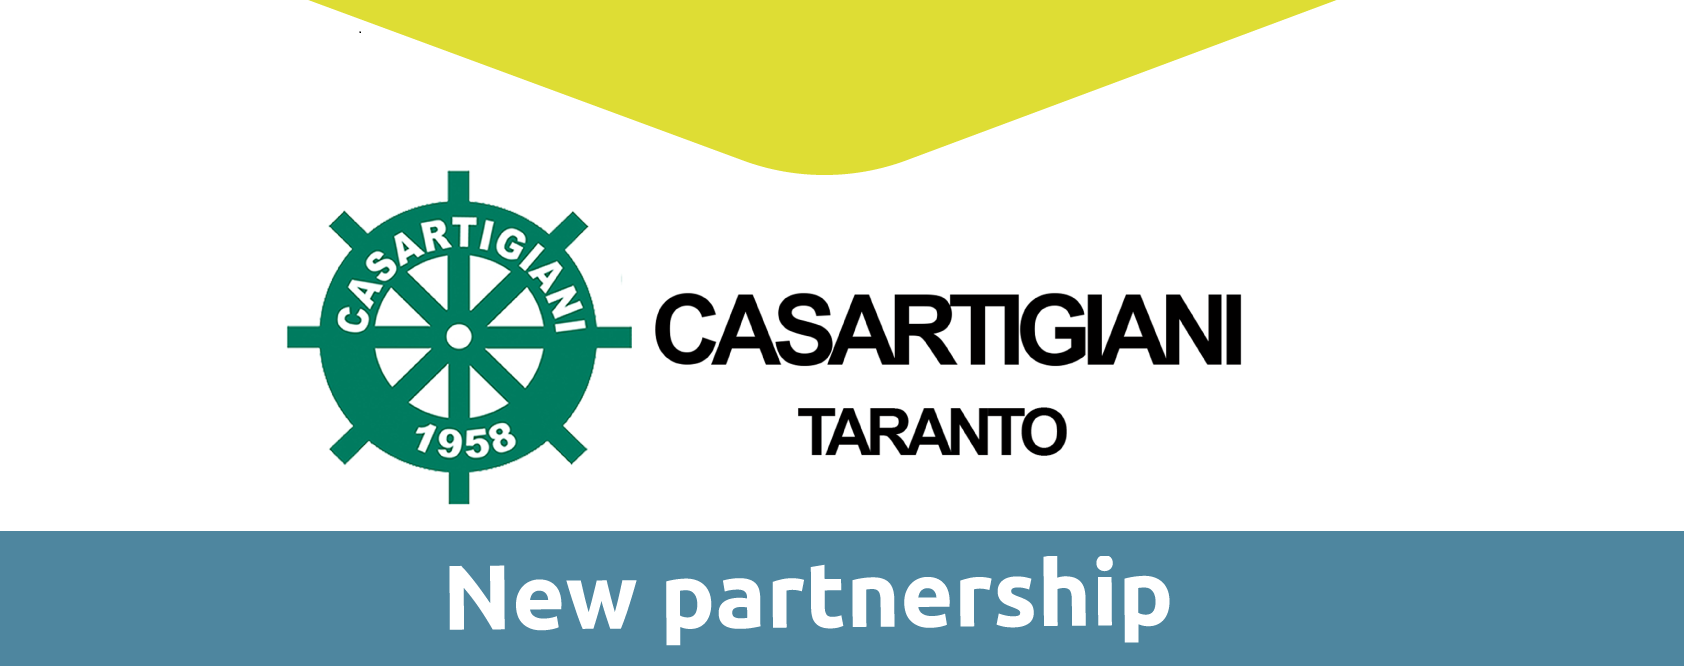 ID BANK si arricchisce della nuova collaborazione  con Casartigiani Taranto